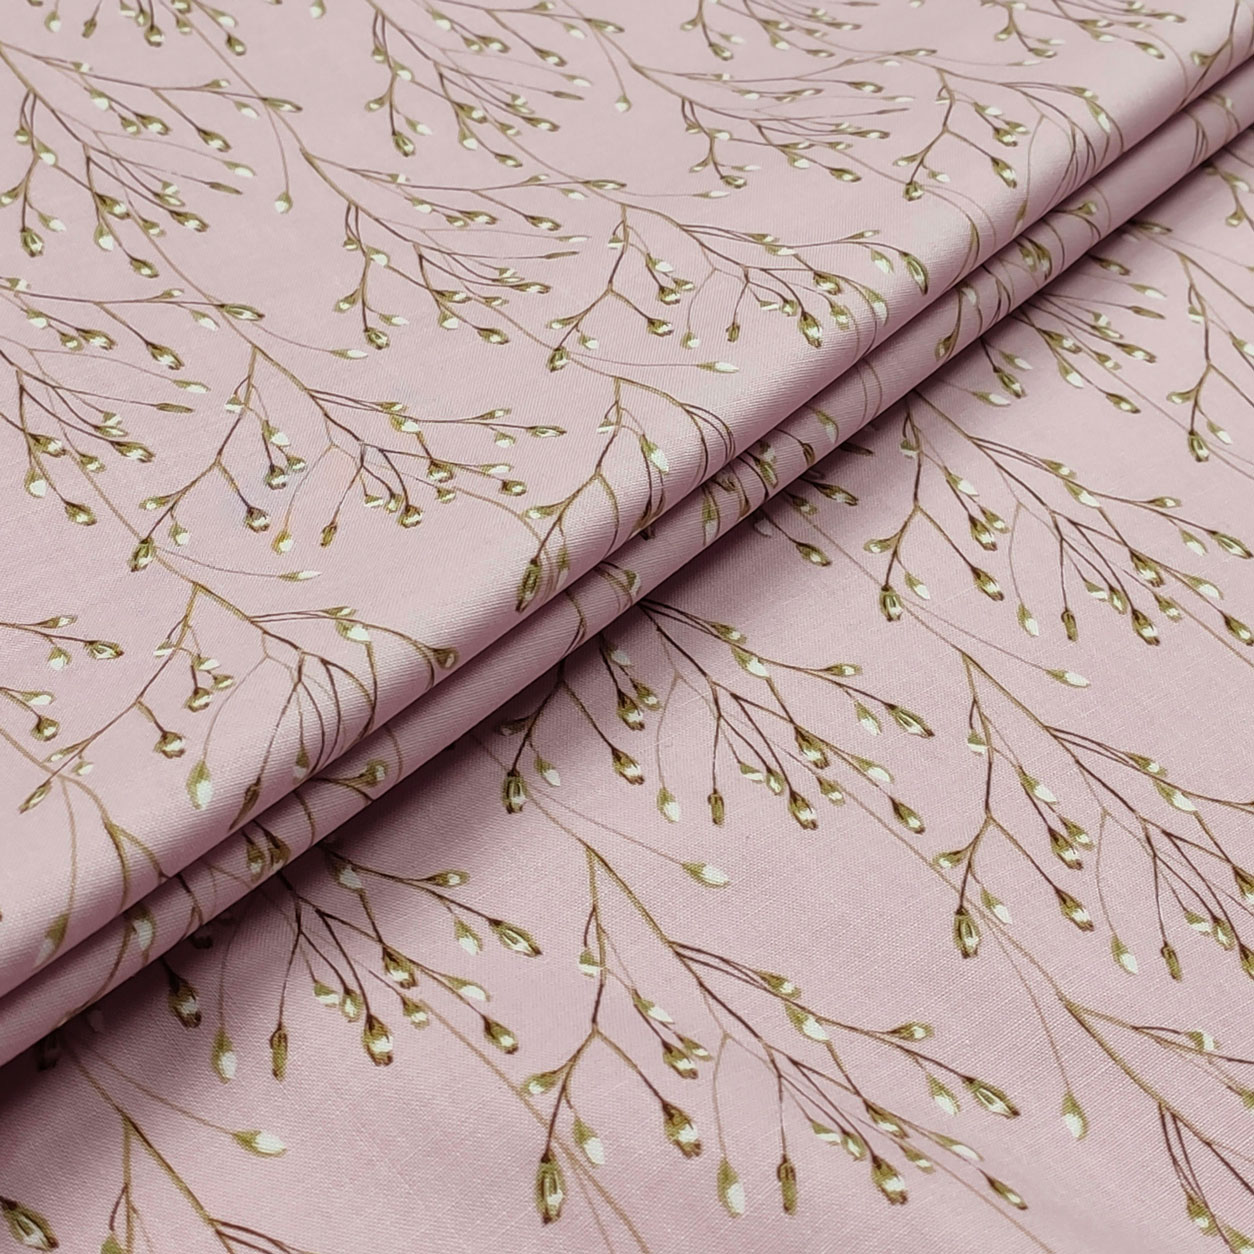 cotone arredo ramoscelli rosa